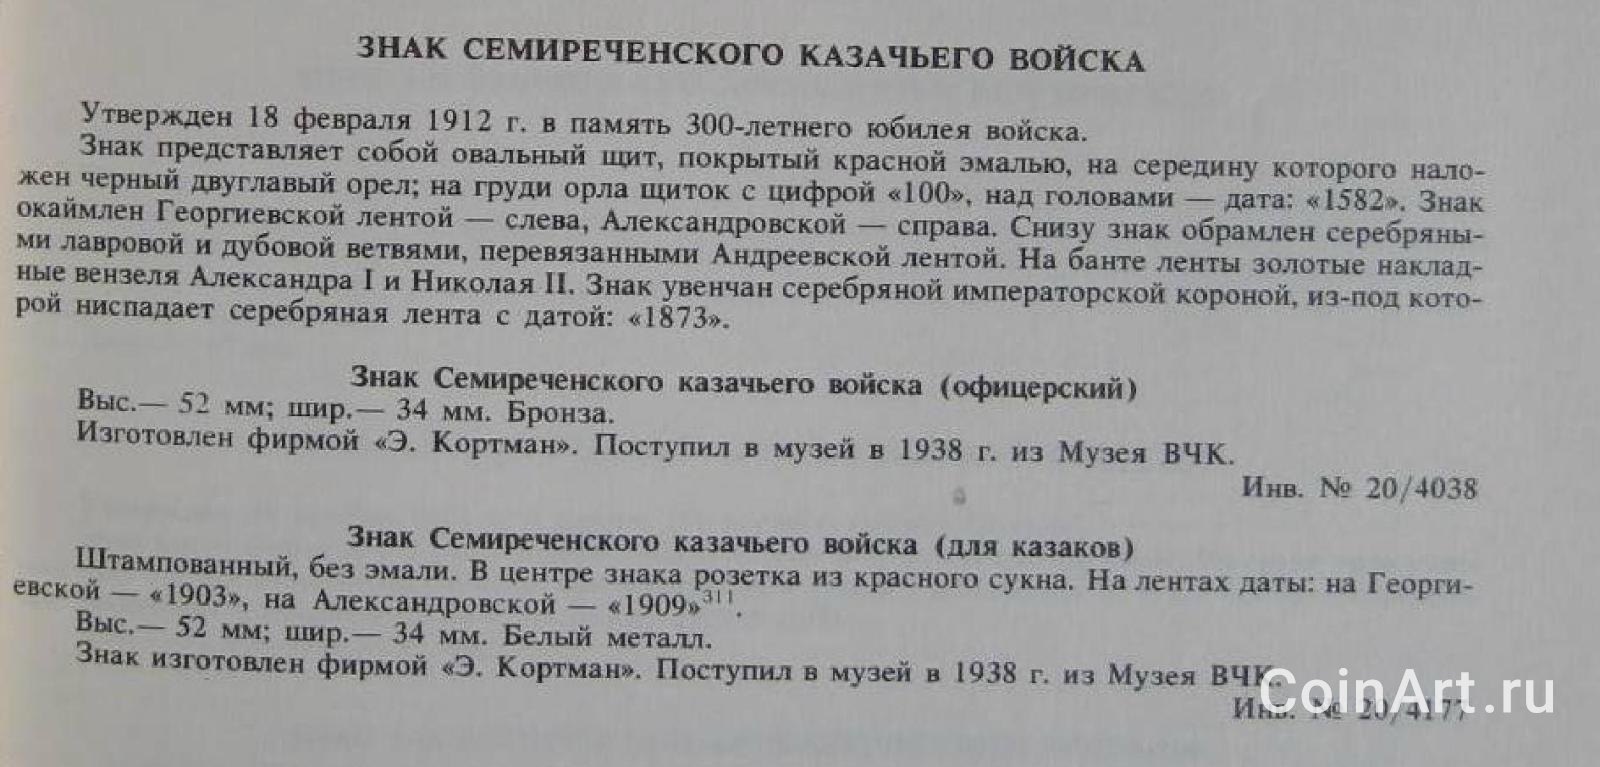 Шевелева. Нагрудные знаки русской армии (1993)_0067.jpg